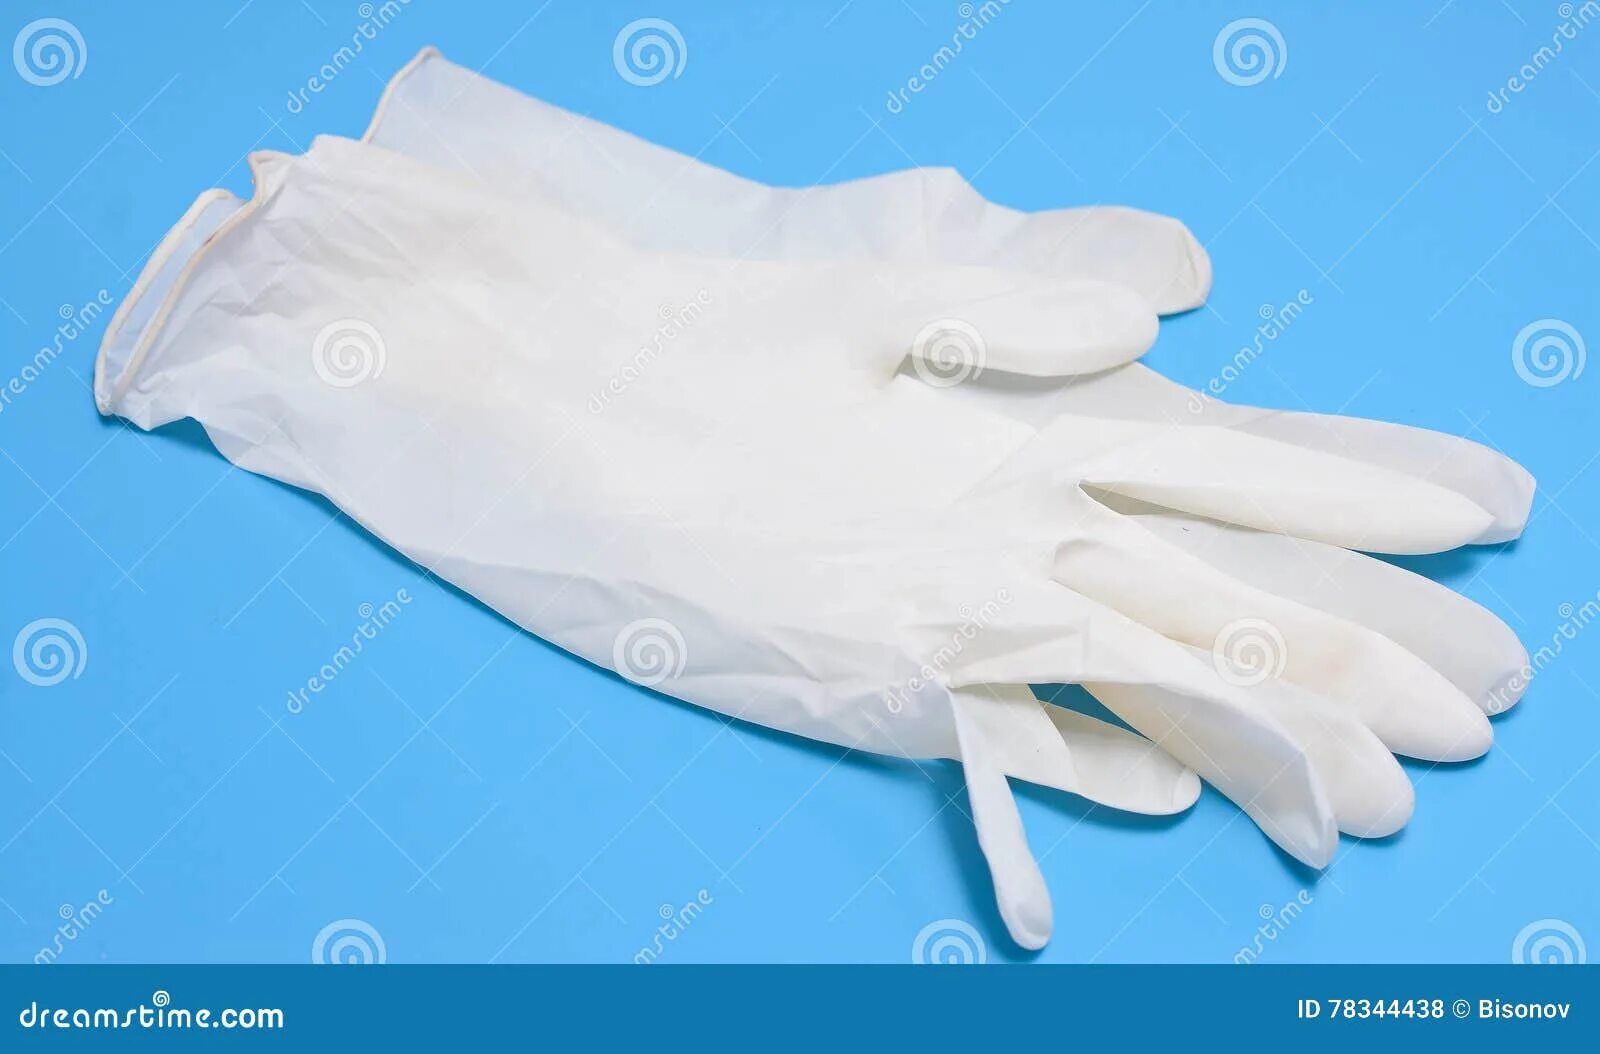 В мешке находятся 24 черные перчатки. Перчатки медицинские белые. Медицинские перчатки лежат. Медицинские перчатки на столе. Медицинские перчатки лежат на столе.